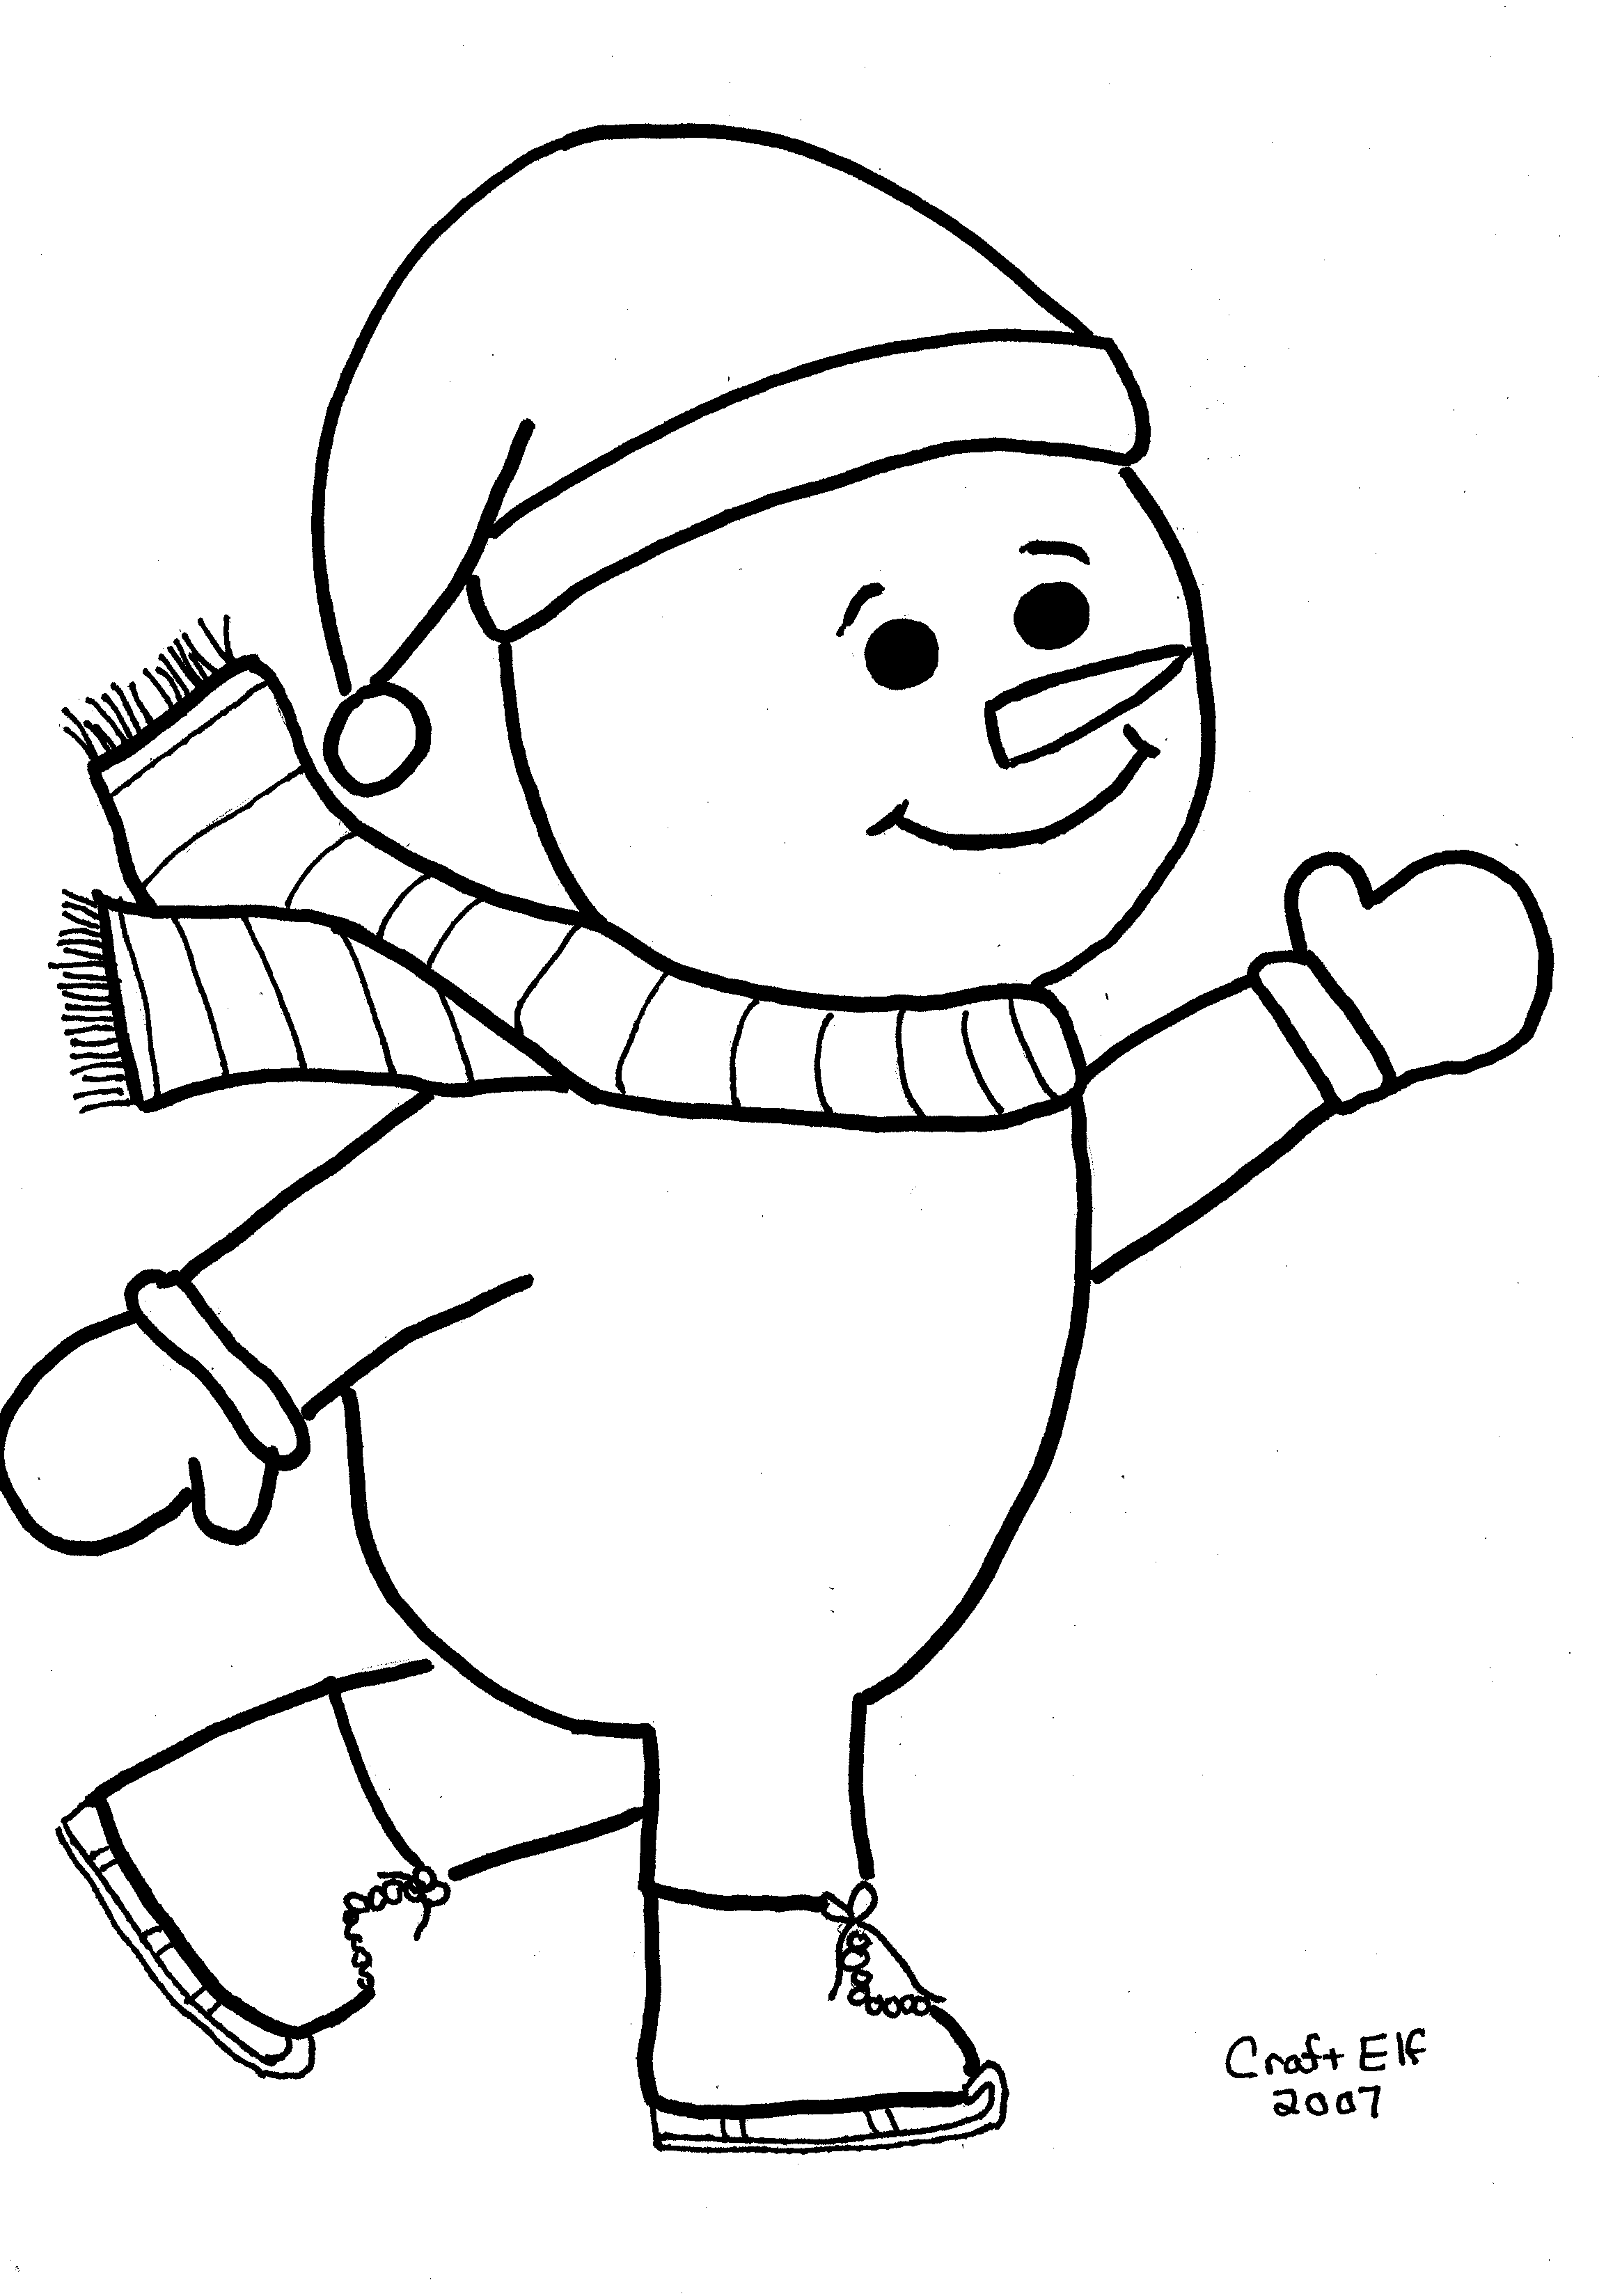 Free skating snowman coloring page